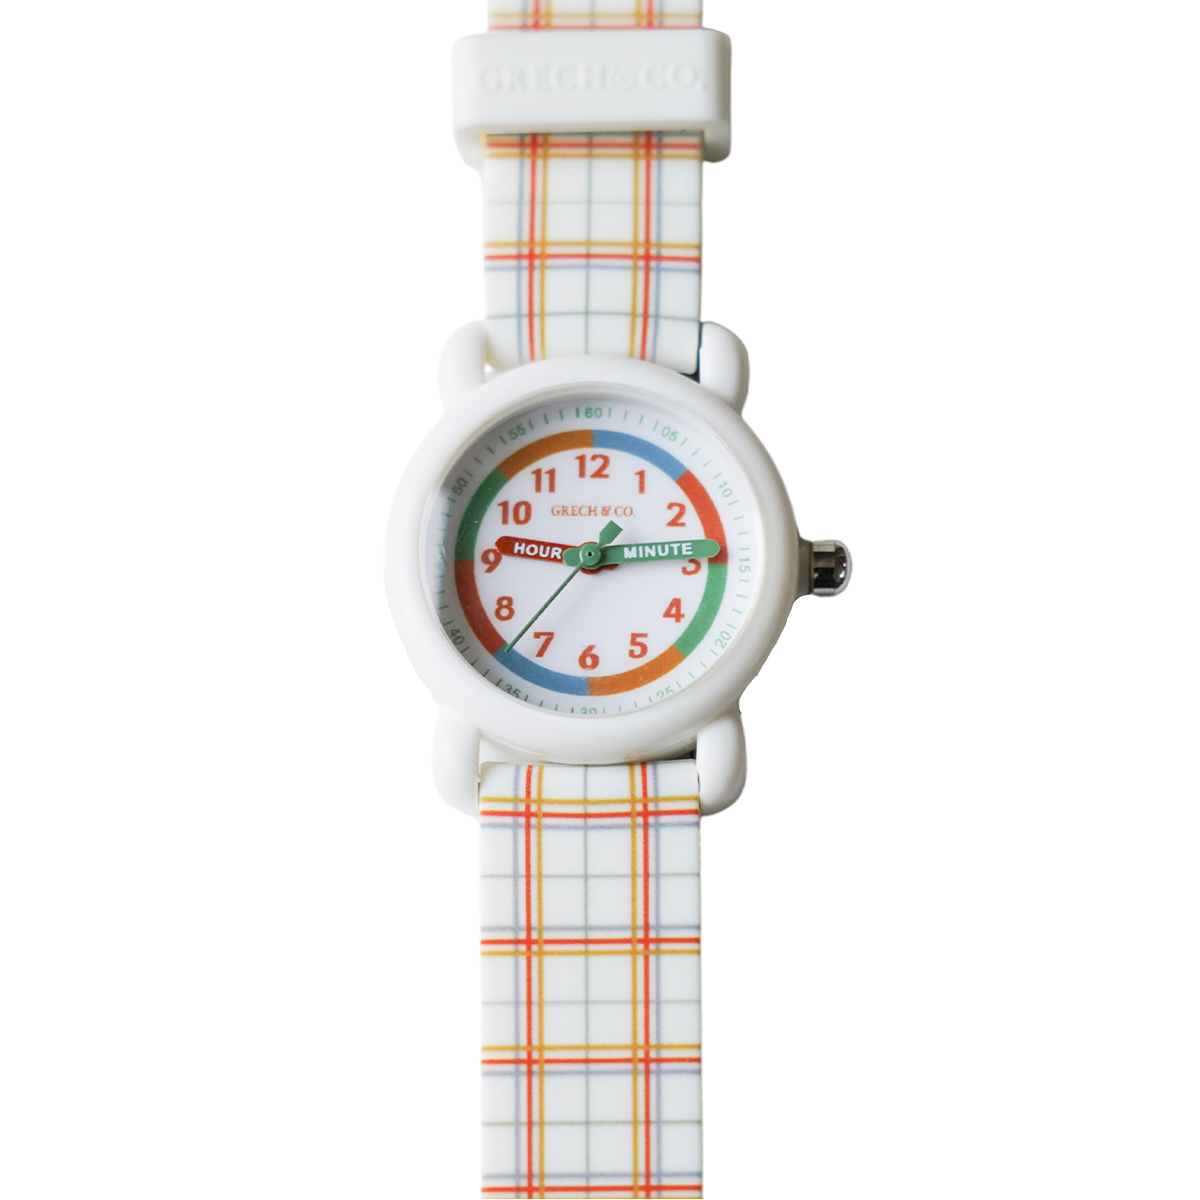 Leer je kind de tijd goed met behulp van het kinderhorloge plaid pattern van Grech & Co. Het horloge is zo gemaakt dat het makkelijk af te lezen is, maar ook heel goed om te leren klok kijken. Het horloge is spatwaterdicht. VanZus